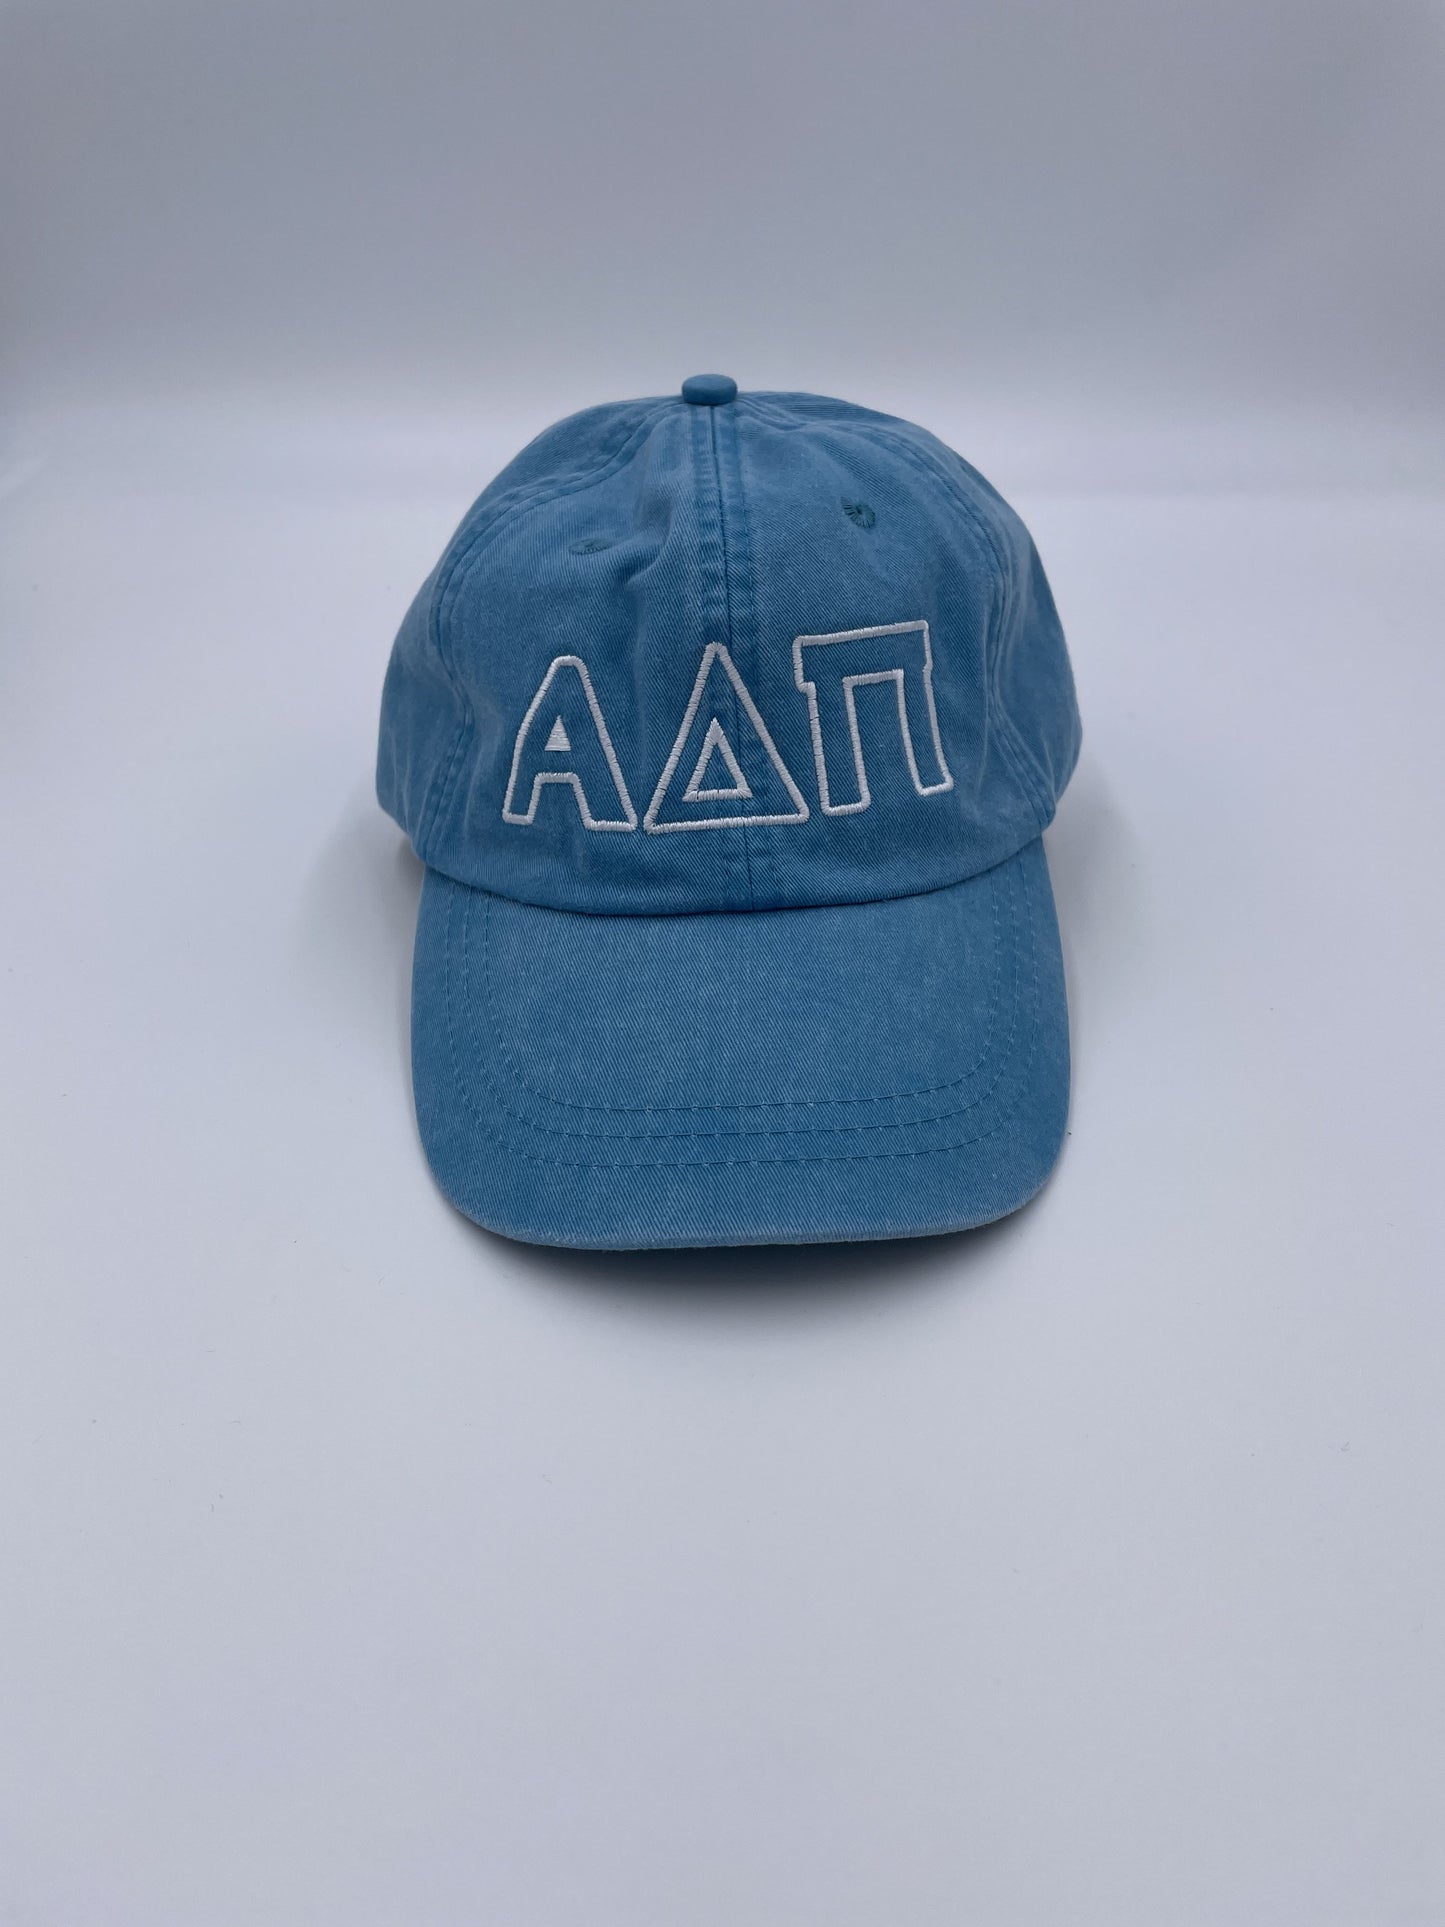 Outline Letter Hat Greek in Alpha Delta Pi at Wrapsody